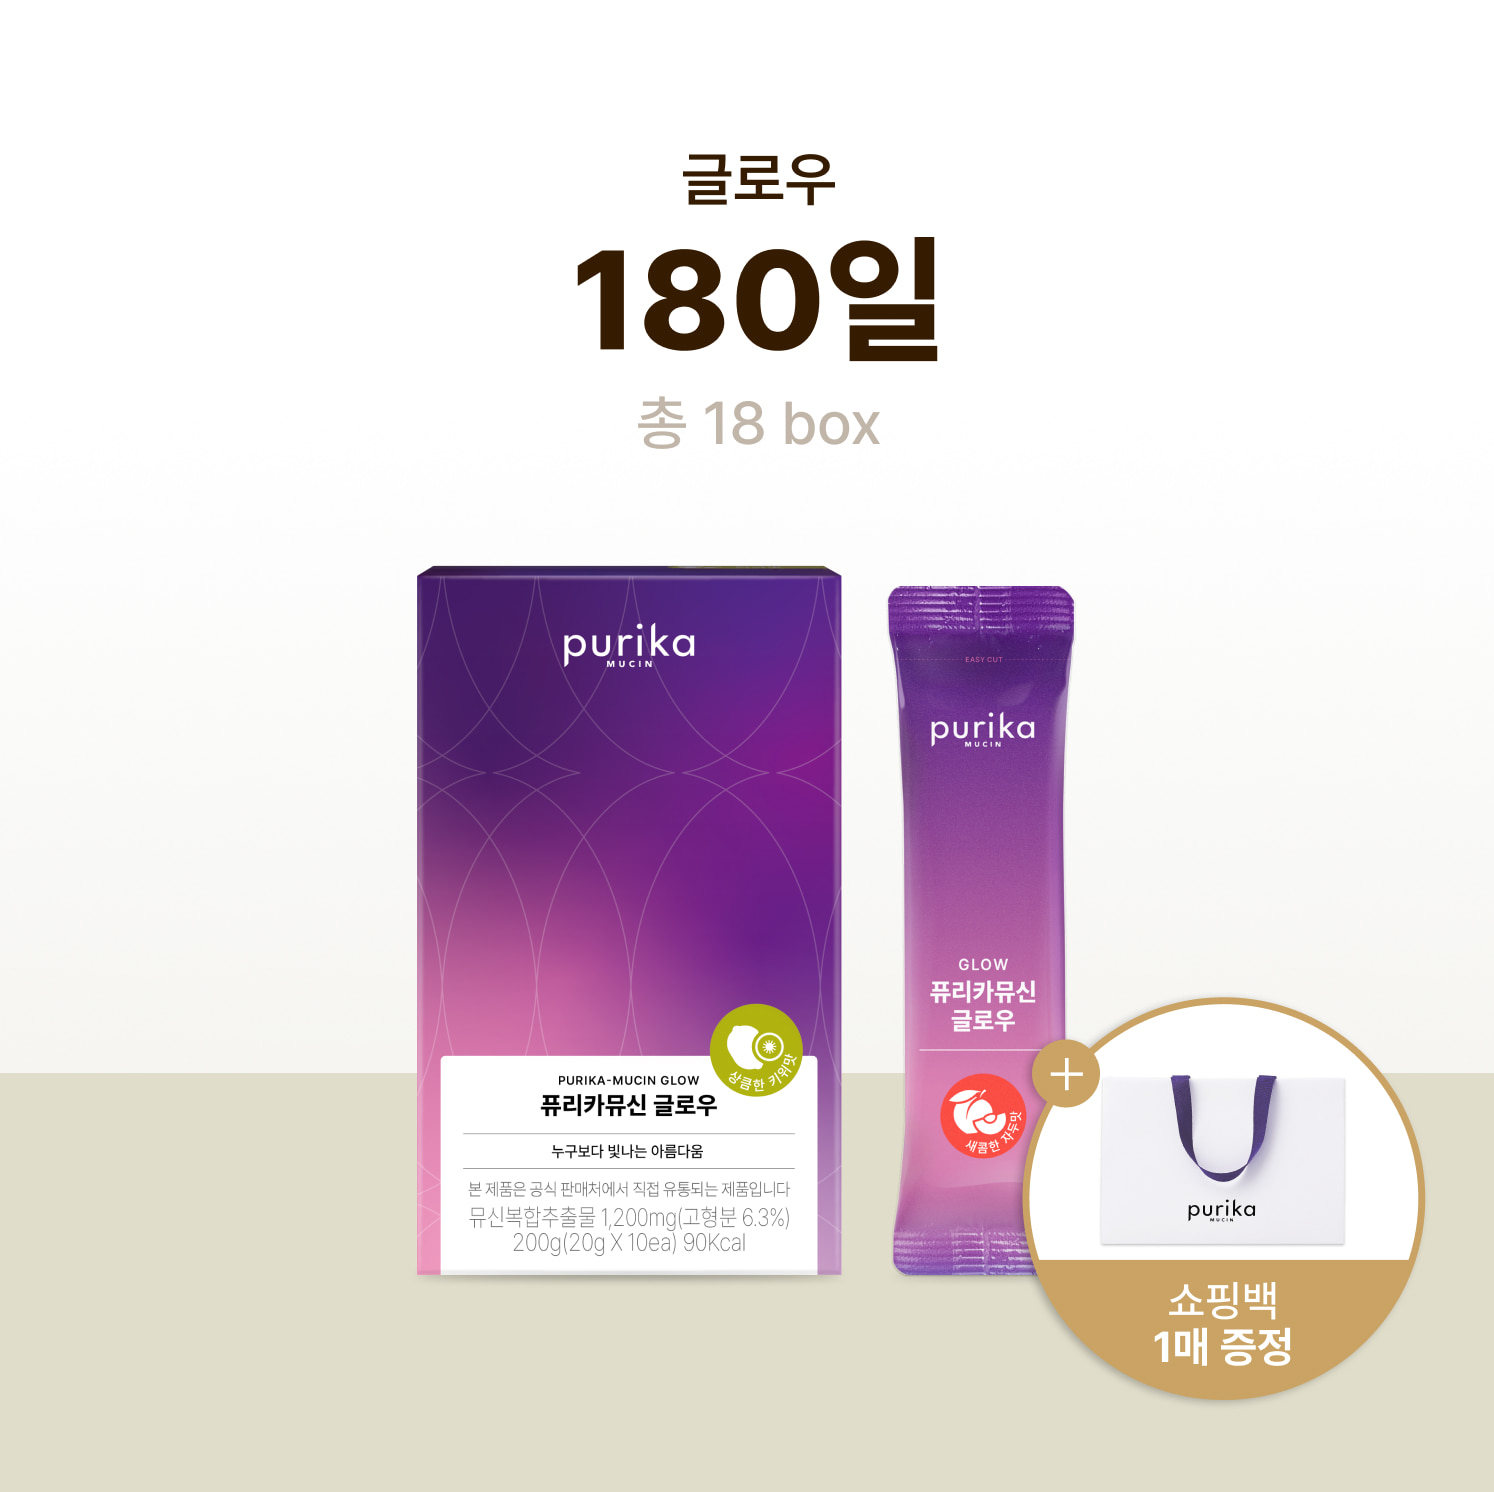 뮤신Glow (18box, 180일) + 쇼핑백 증정(1매)